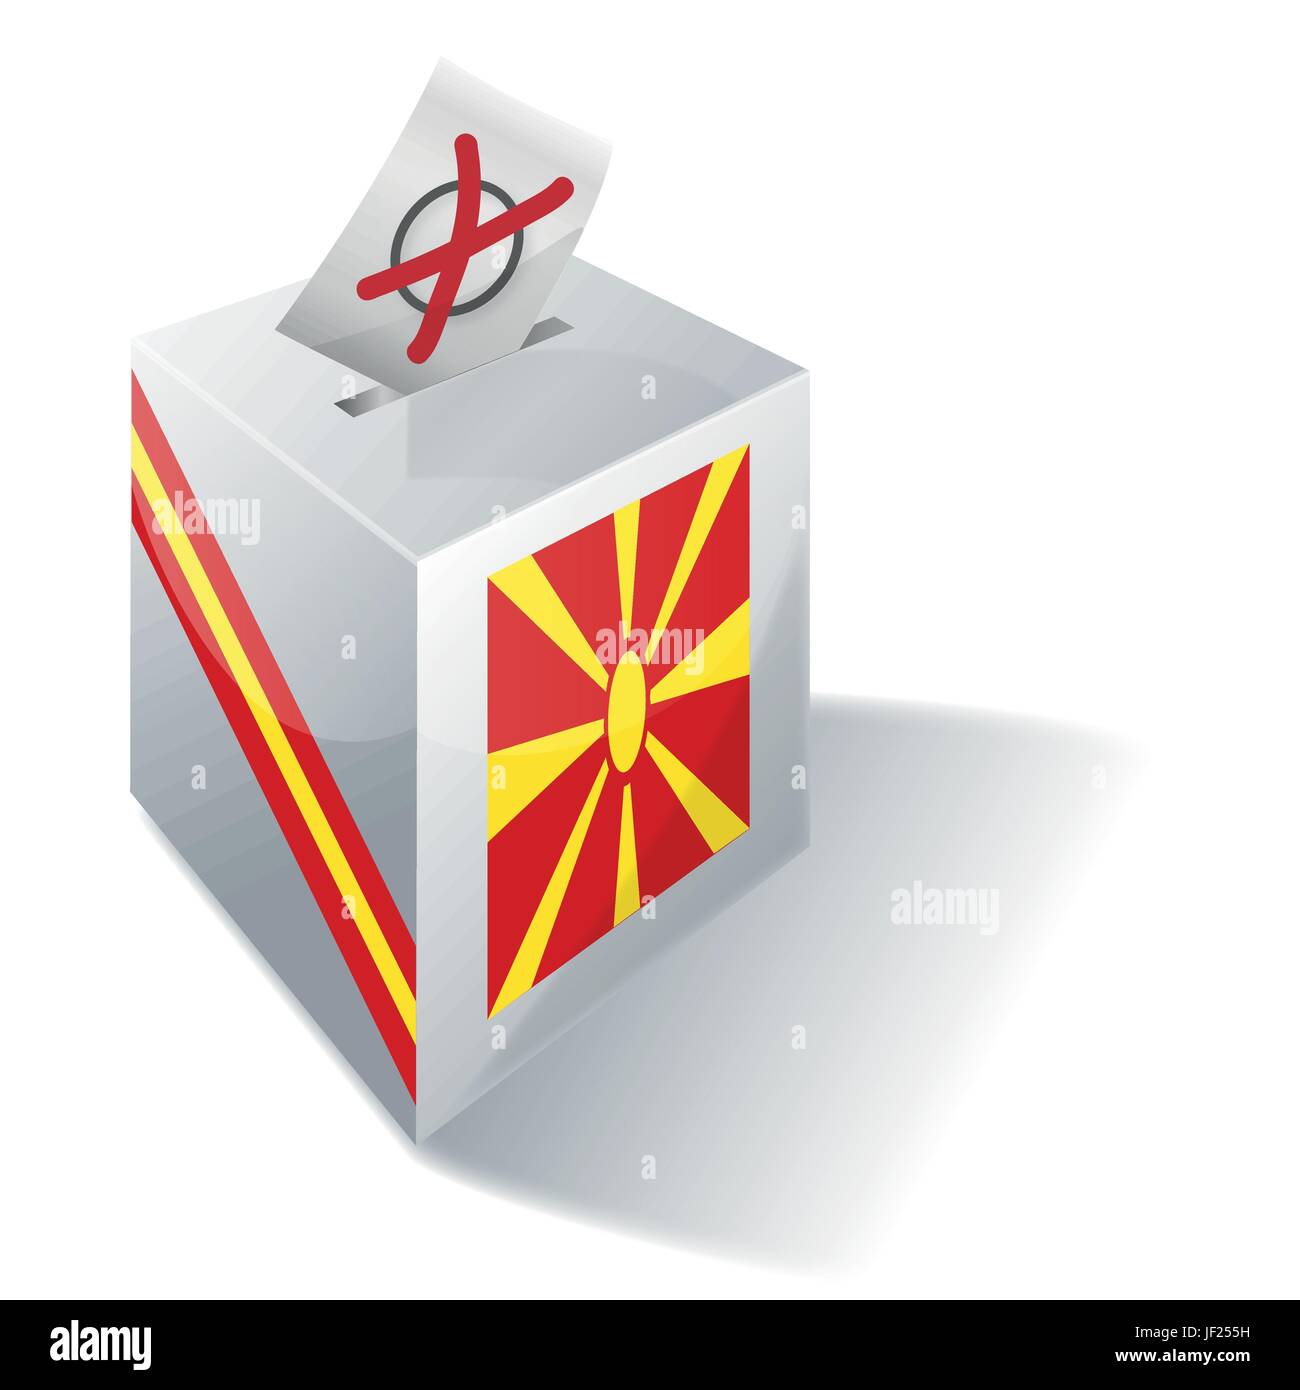 Macédoine, République, social, croix, urnes, drapeau, vote, vote, voix, bouton, Illustration de Vecteur